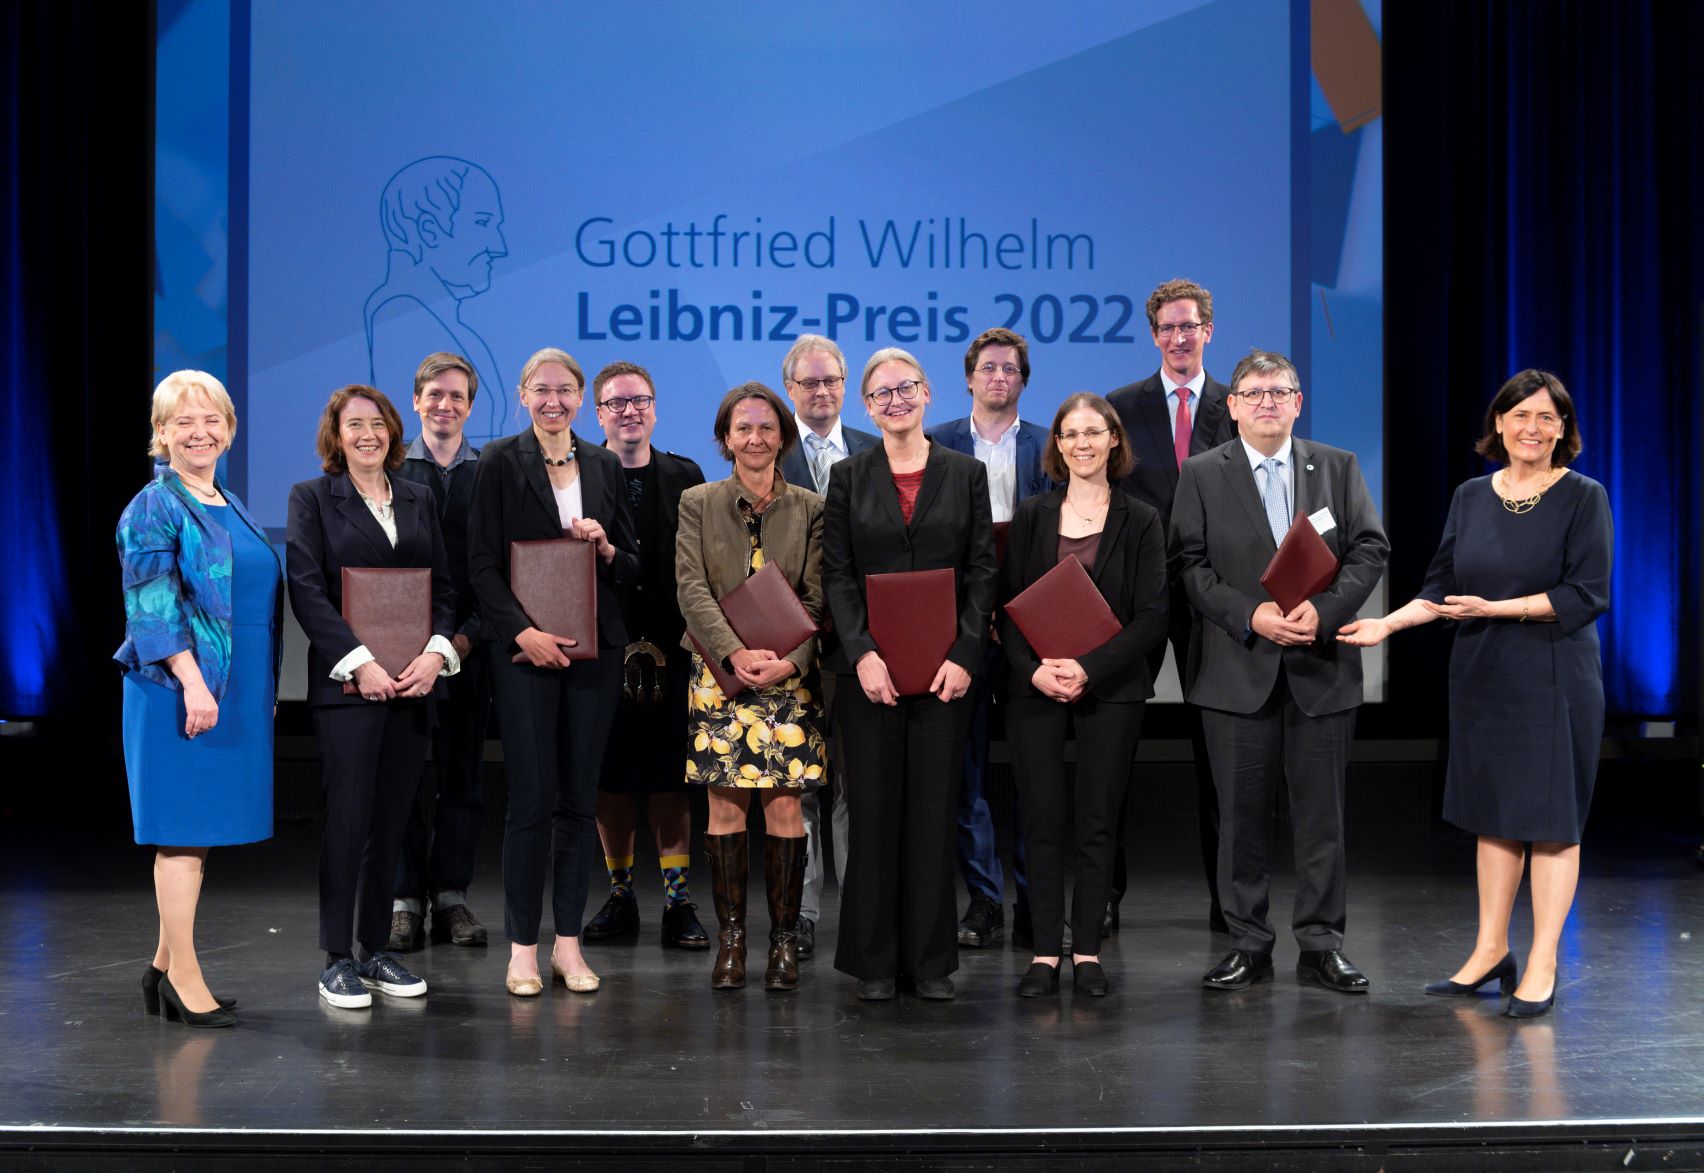 Die Preisträgerinnen und Preisträger des Gottfried Wilhelm Leibniz-Preises 2022 vor dem LVR LandesMuseum in Bonn.